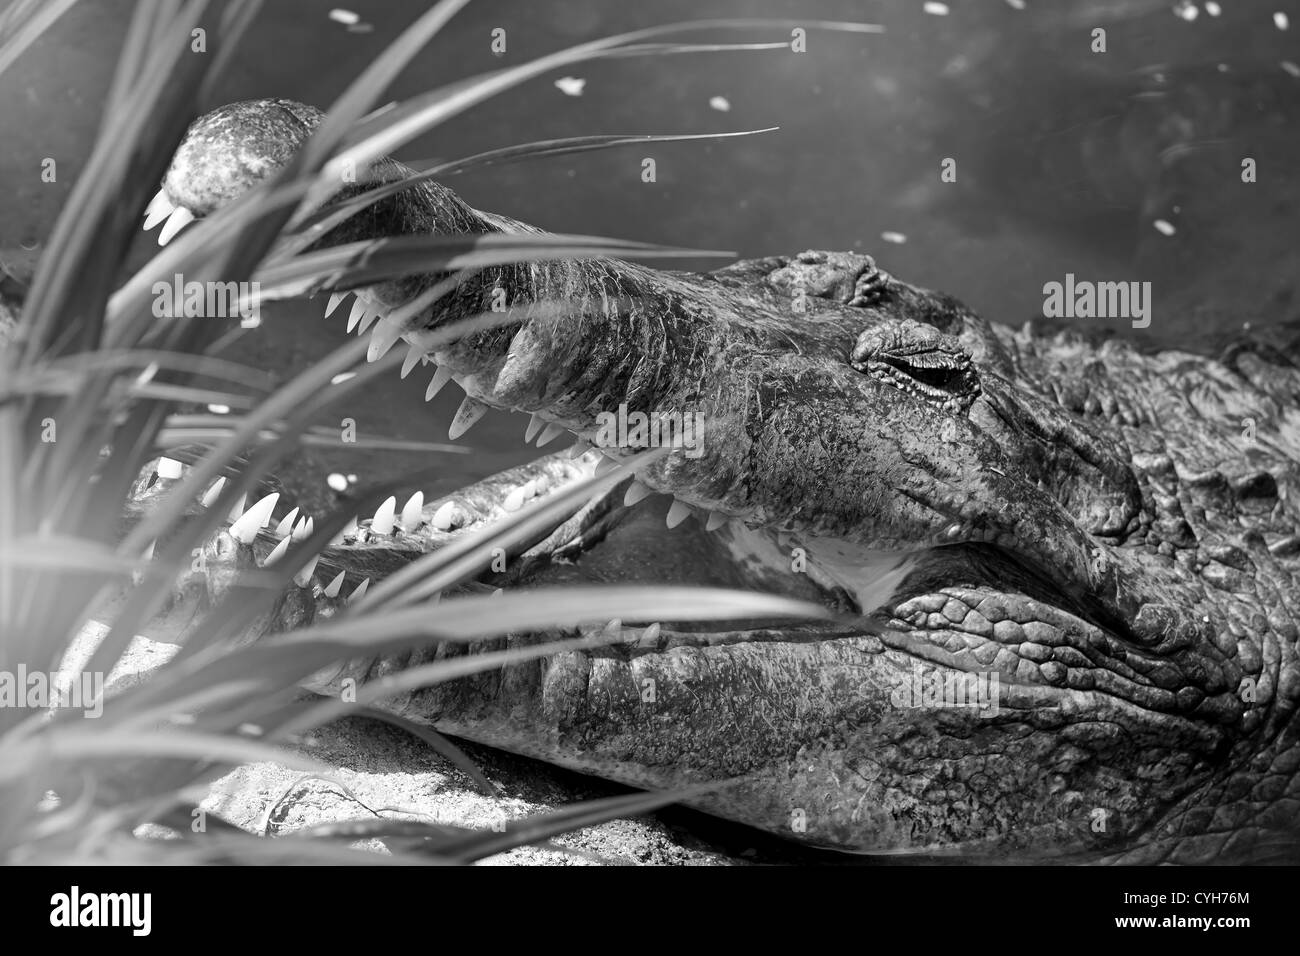 Black and white portrait of a crocodile in Costa Rica Stock Photo